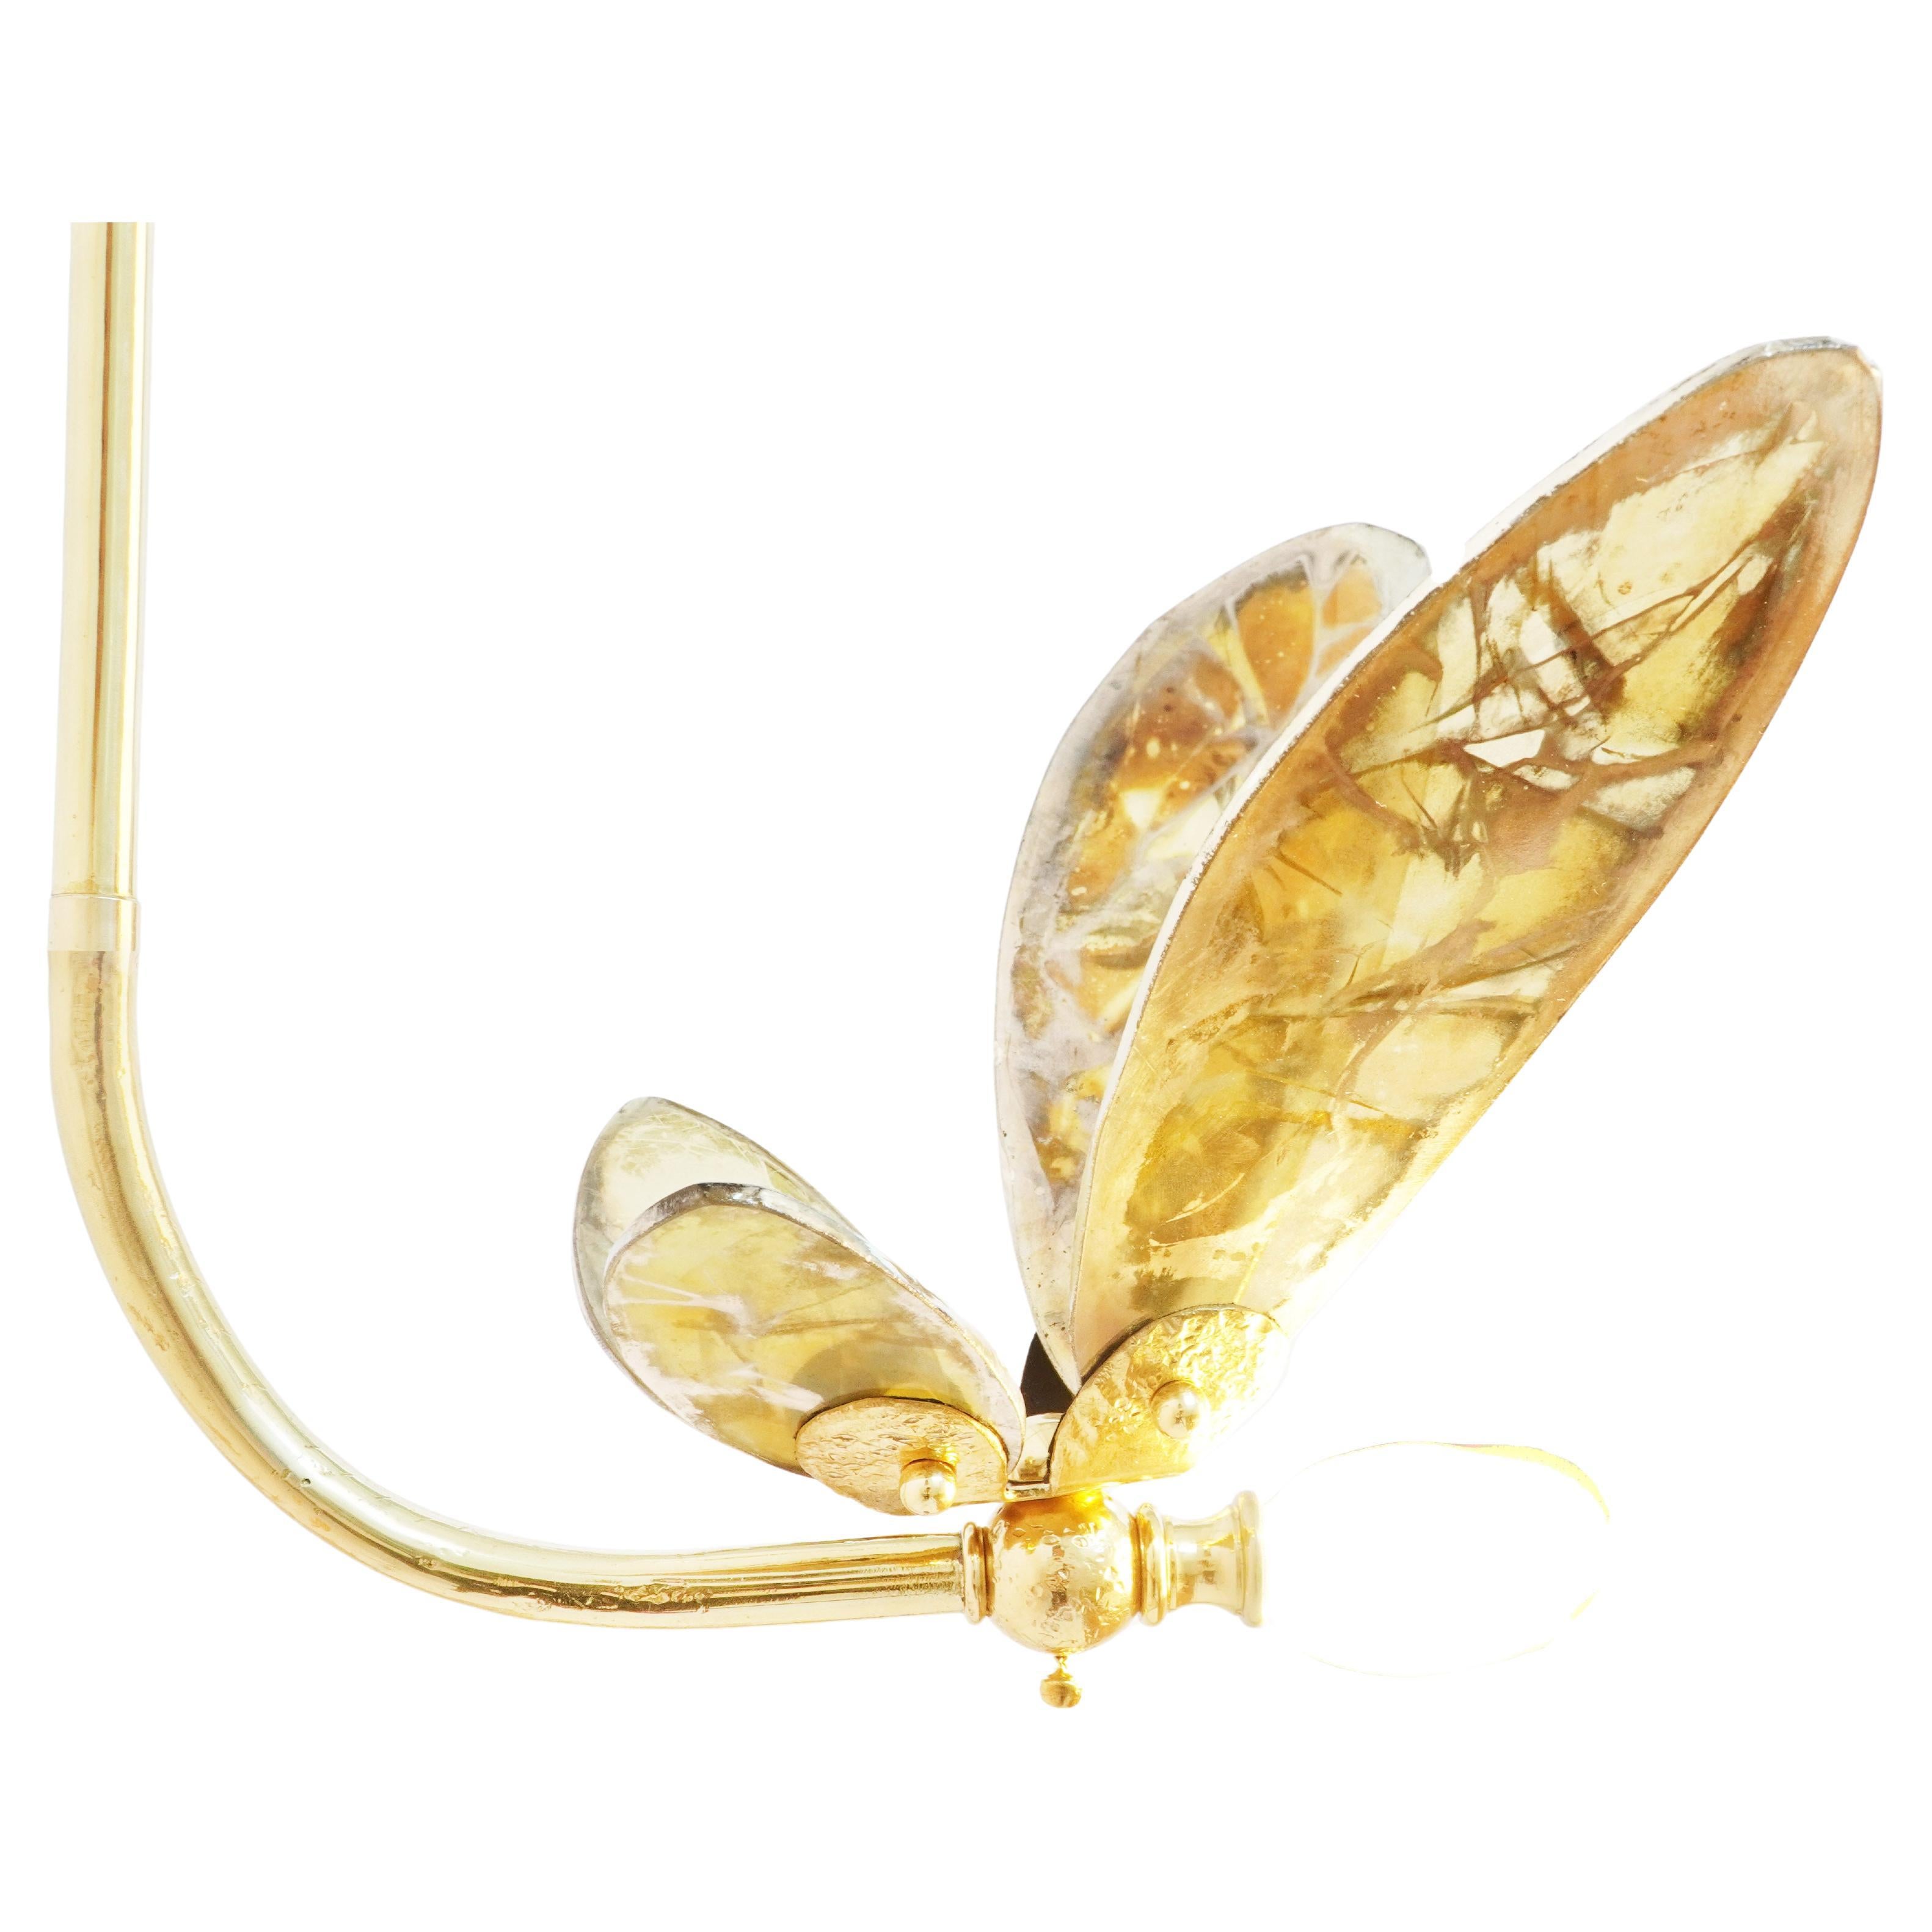 TRILLY les ailes de fée de la liberté

Petites et sophistiquées, les Trillies, entièrement fabriquées en Italie, sont les petites sœurs de nos modèles Butterfly, elles apportent une allure éthérée à votre décoration intérieure, grâce à leurs ailes